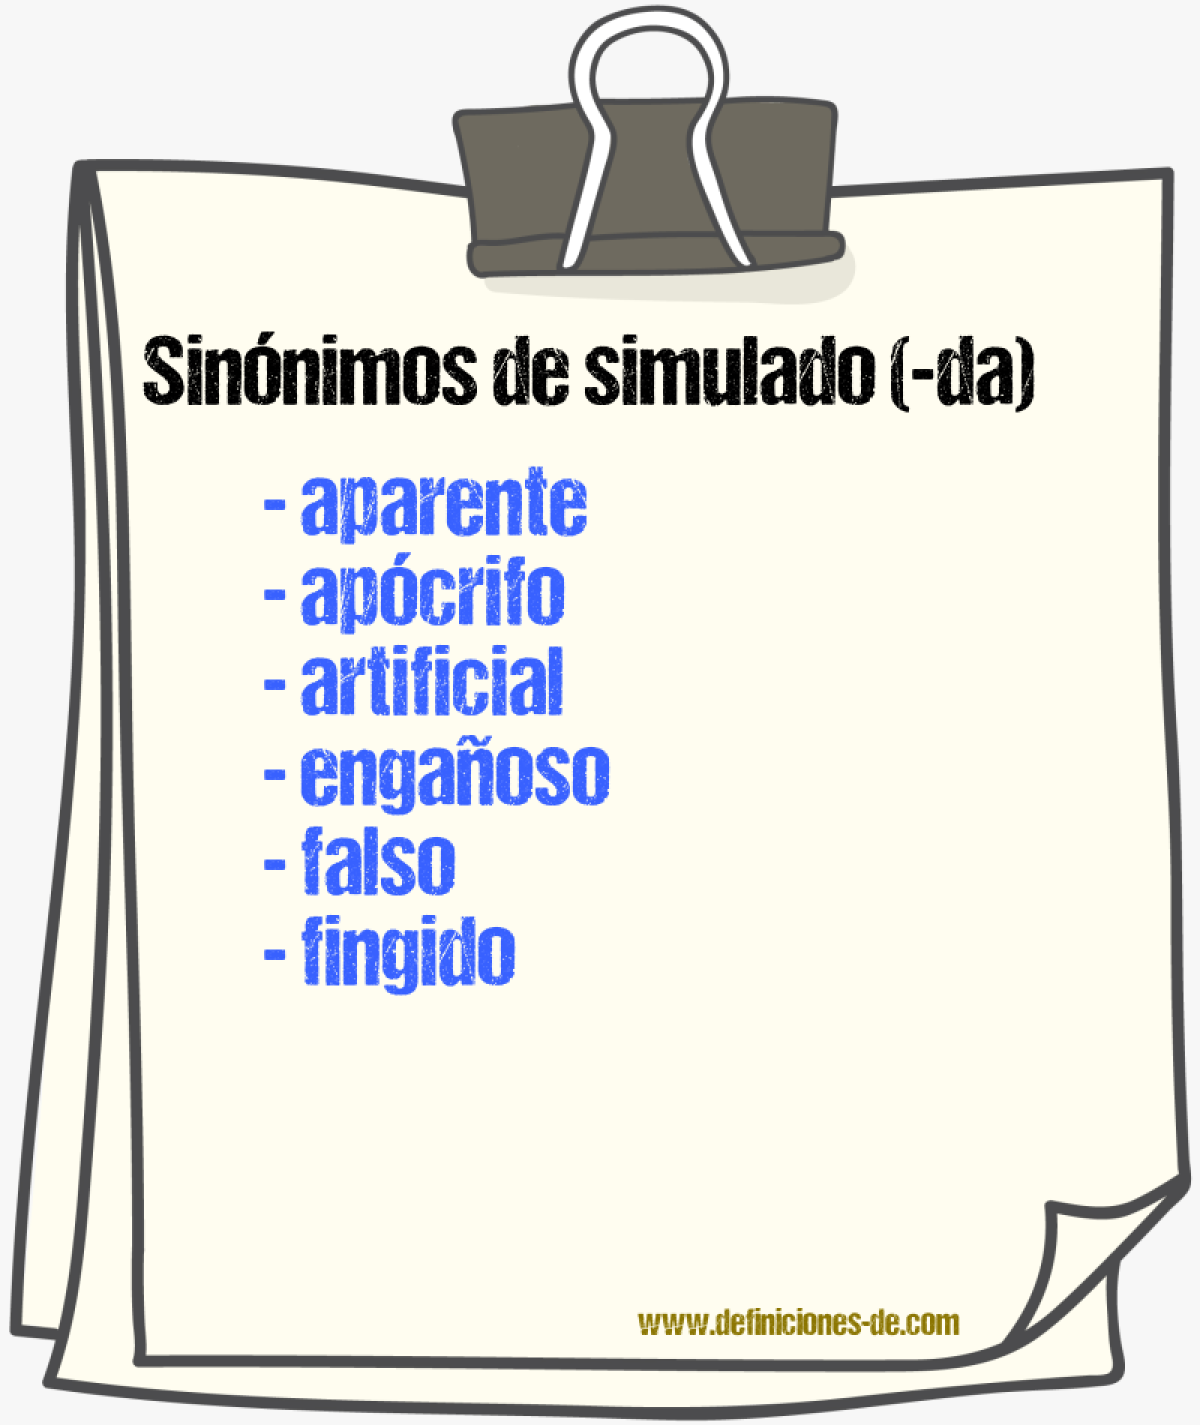 Sinónimos de simulado